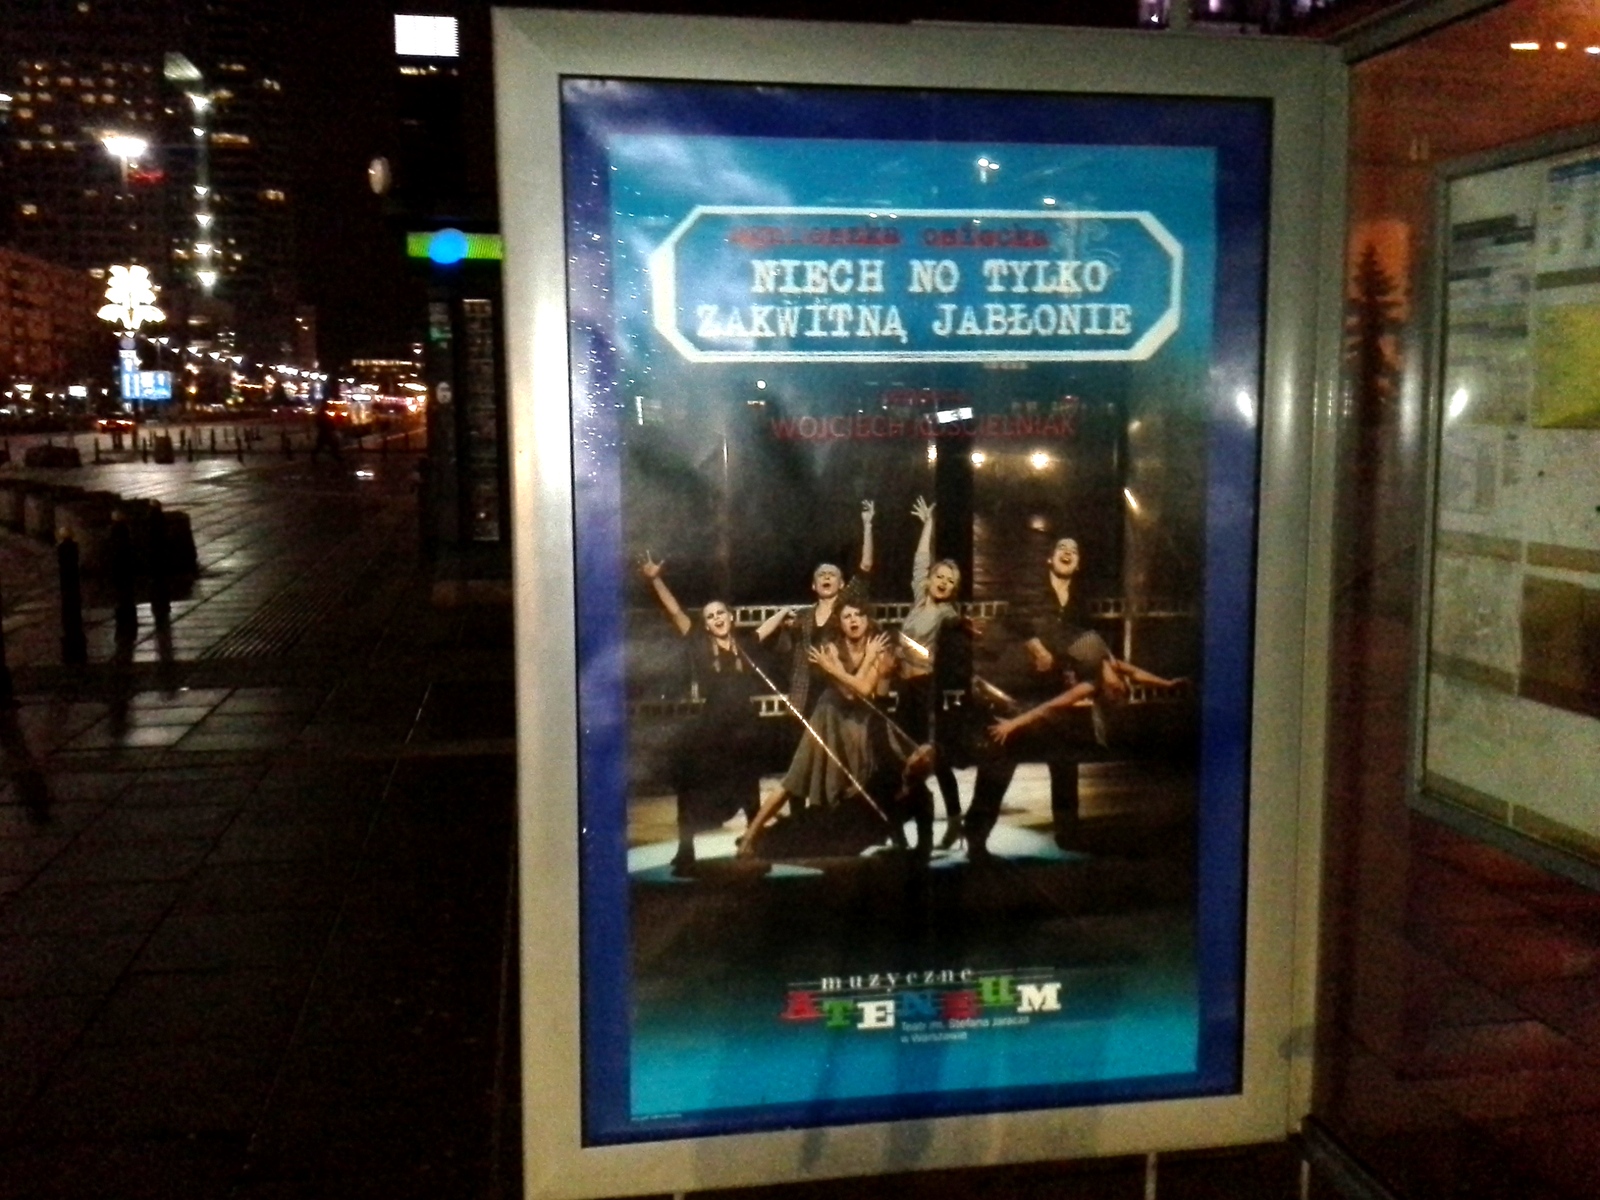 Citylight reklamowy "Niech no tylko zakwitną jabłonie" na przystanku